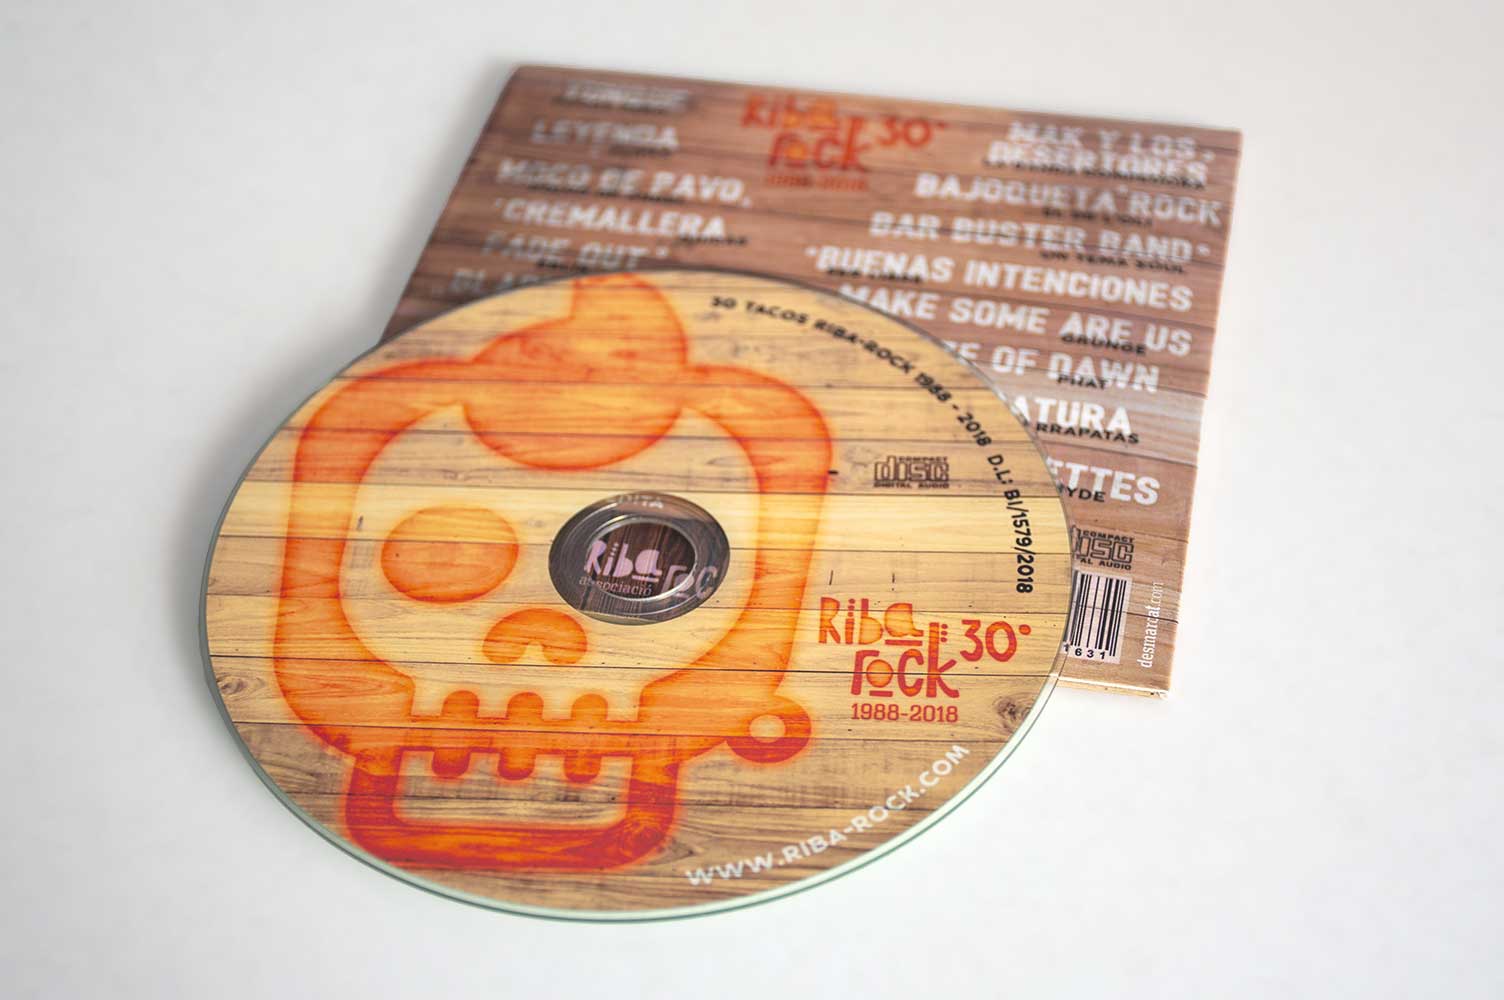 Diseño CD audio Riba-rock 30 tacos galleta